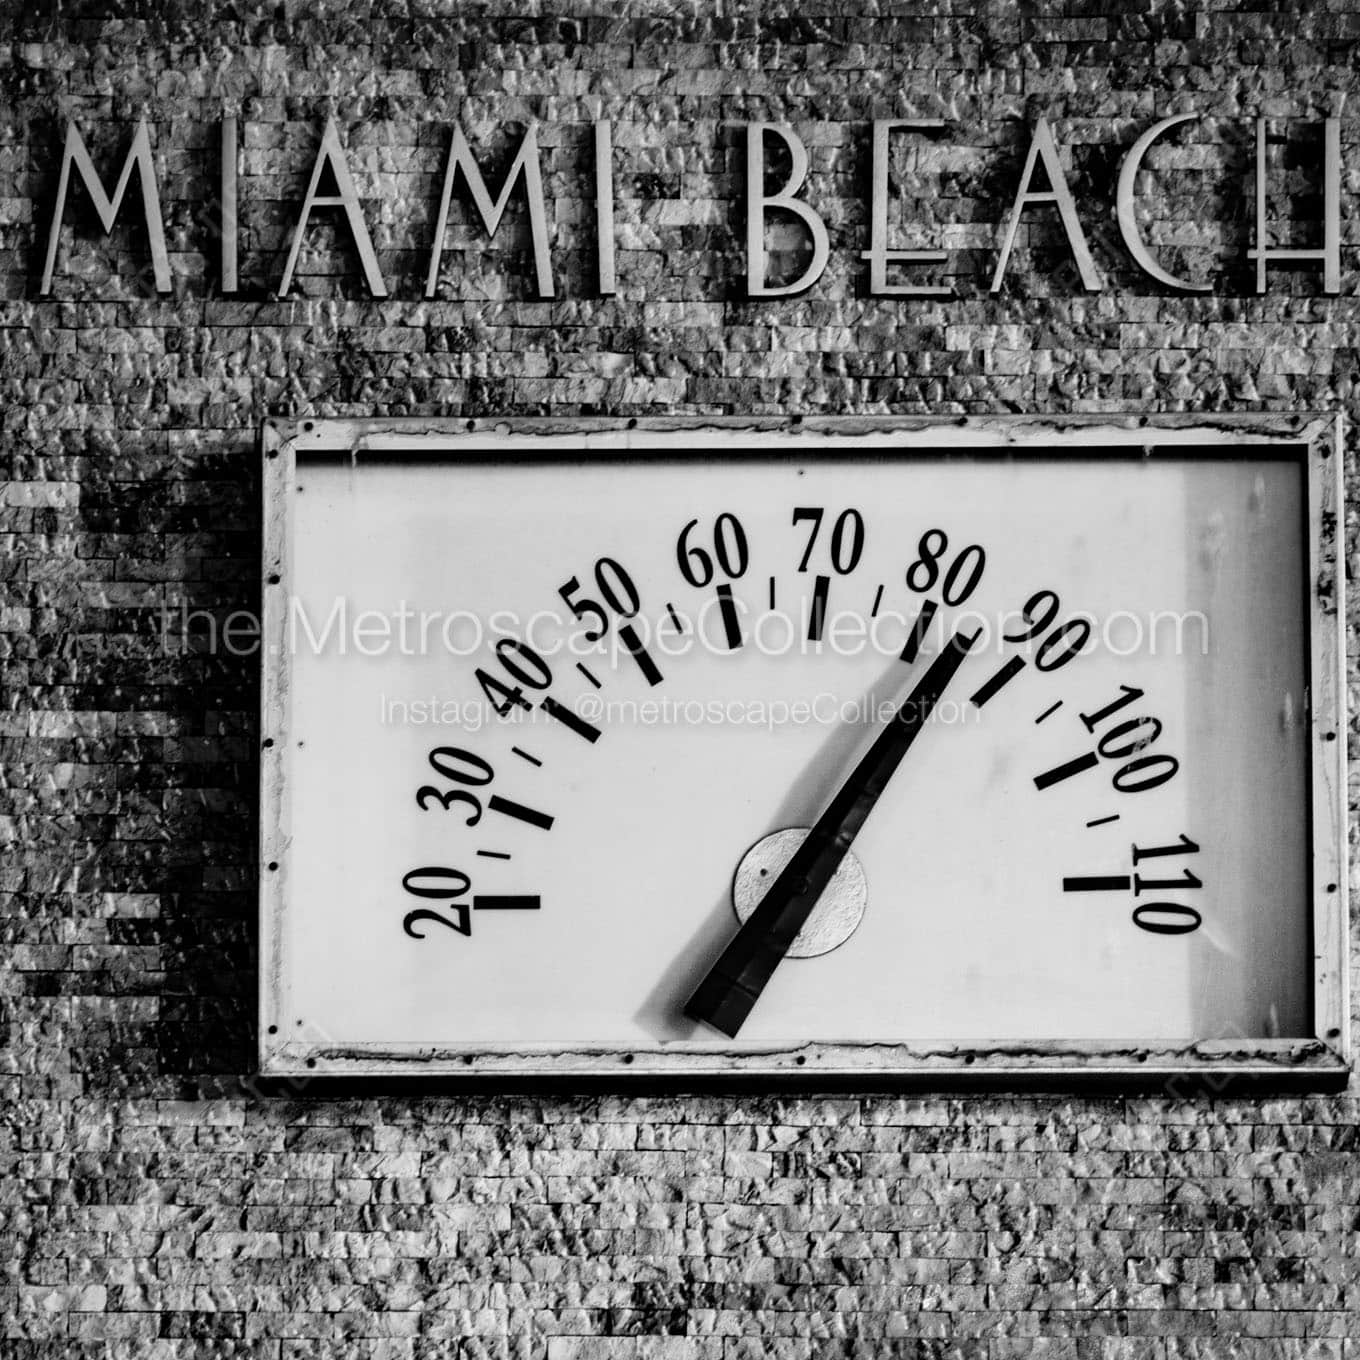 miami beach temperature Black & White Office Art